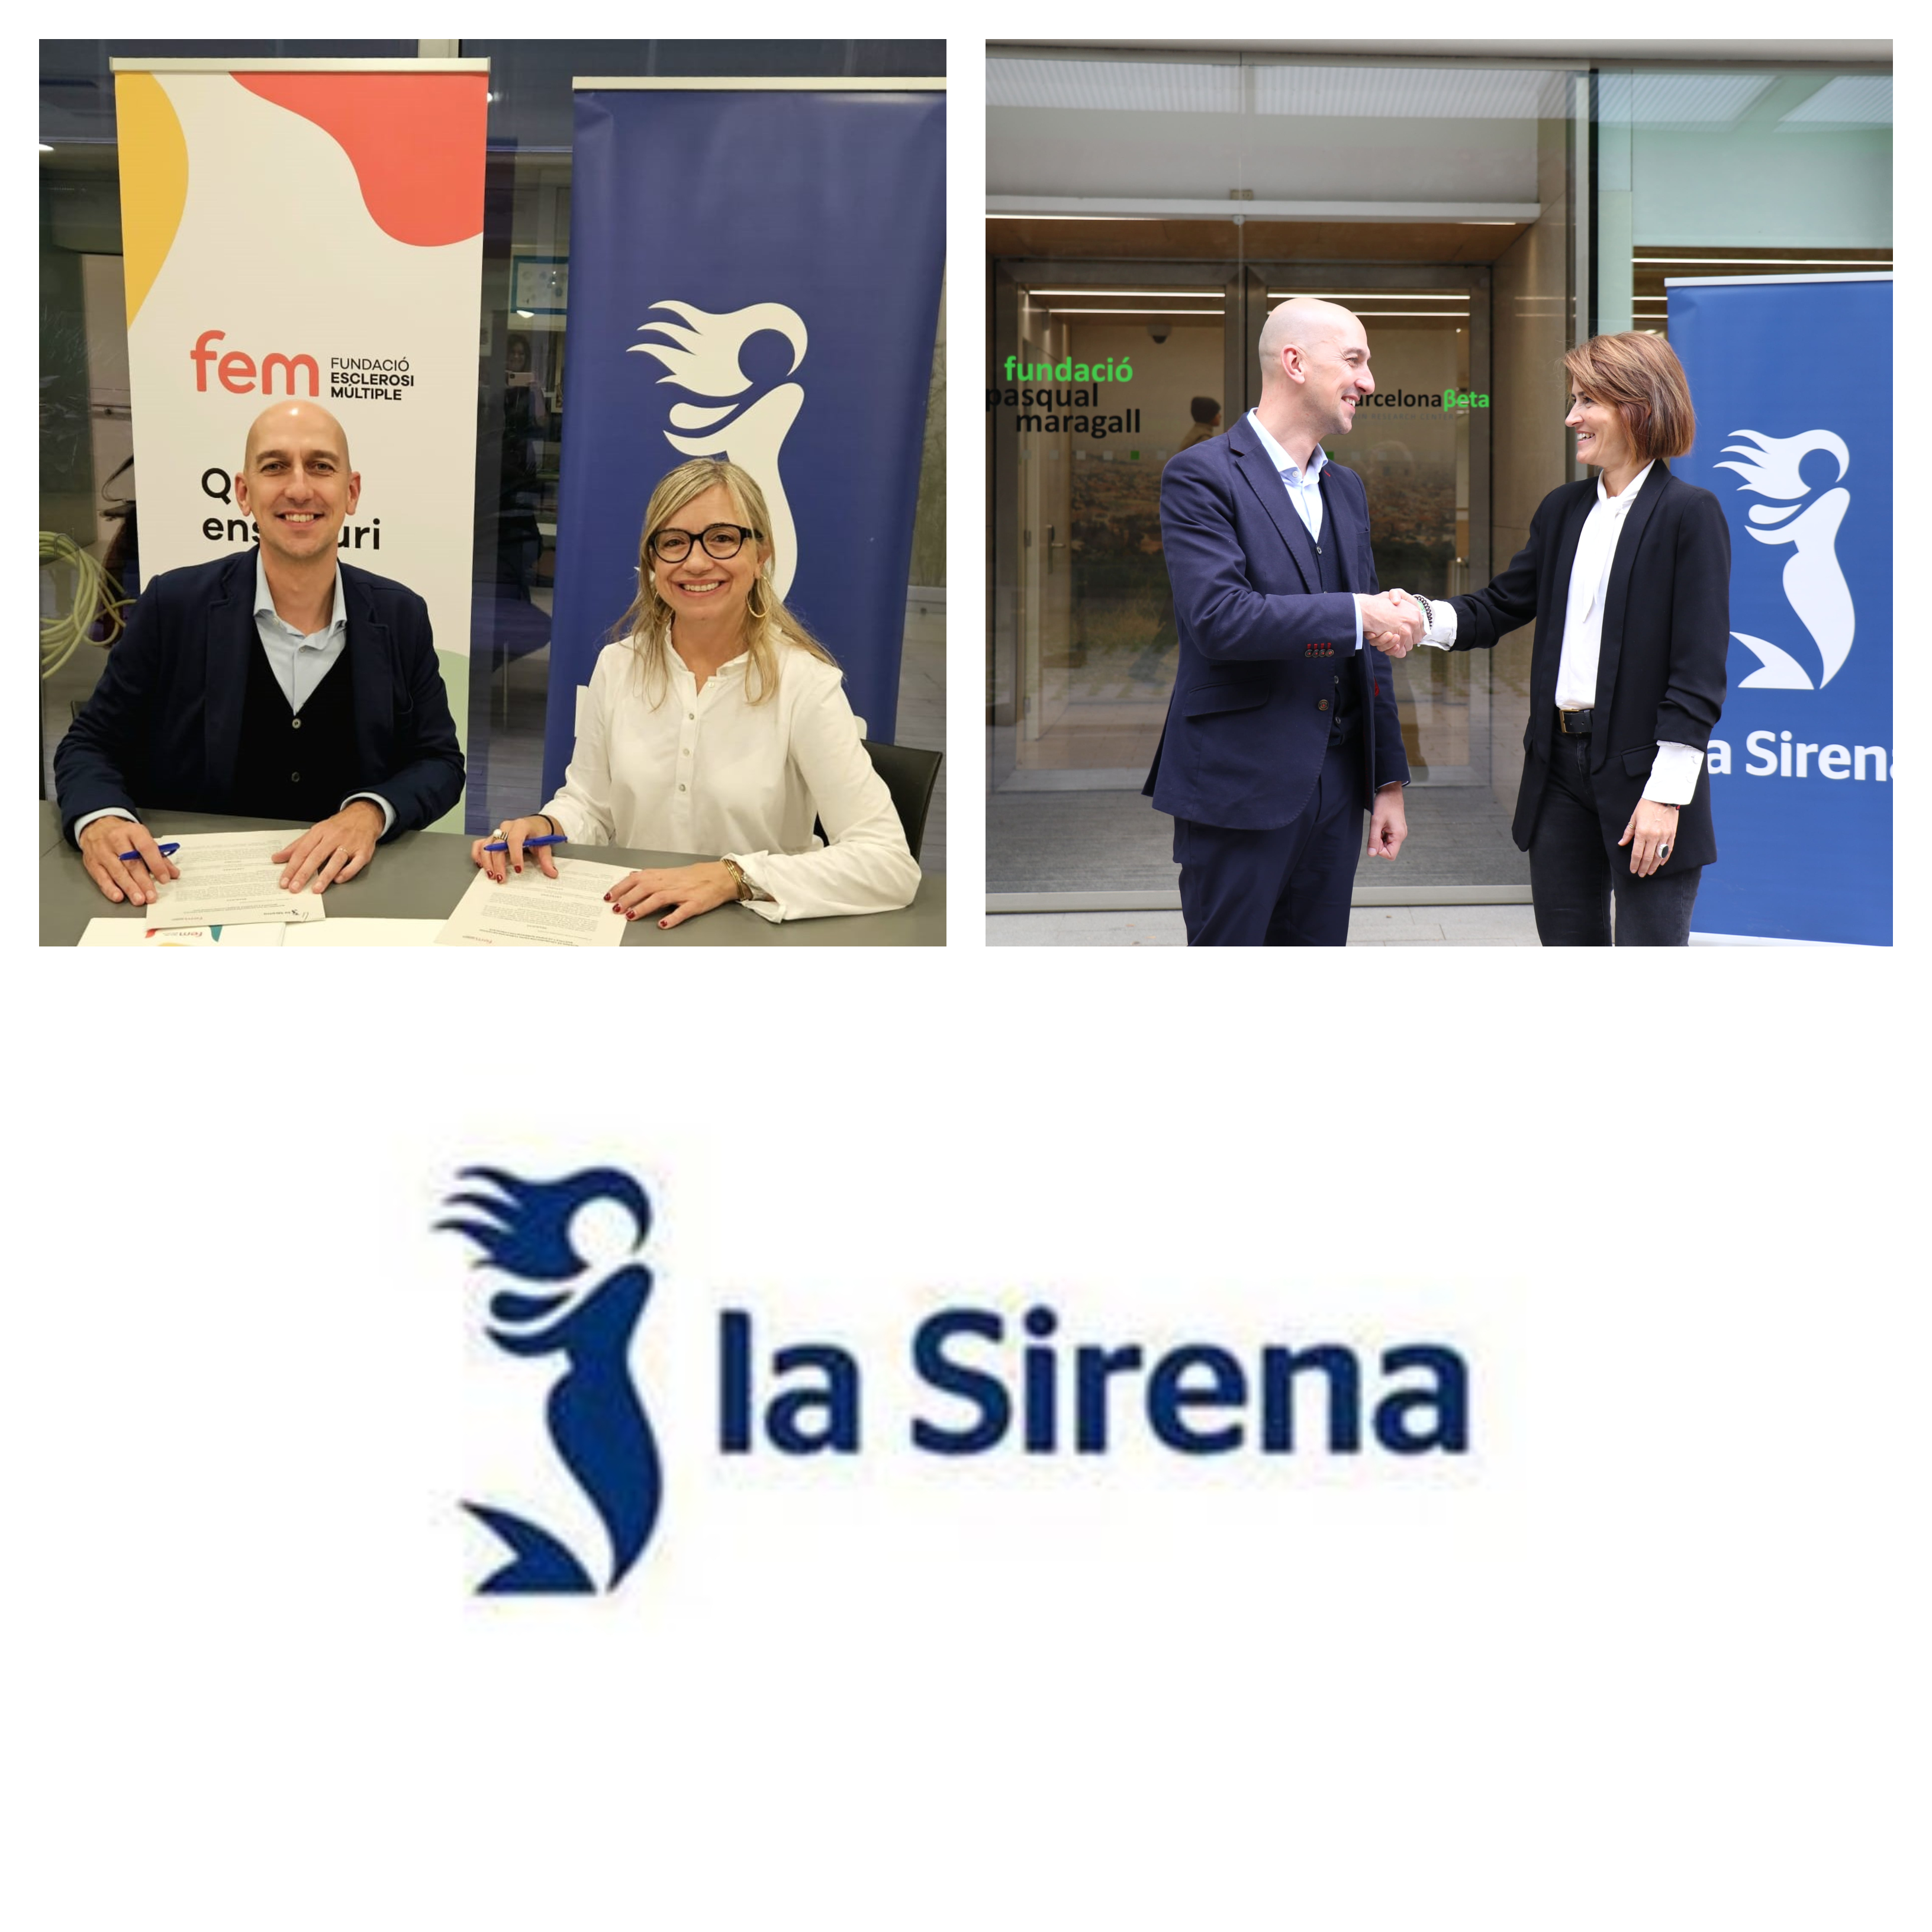 La Sirena refuerza su compromiso con la inclusión laboral y, un año más, renueva su acuerdo de colaboración con la FEM